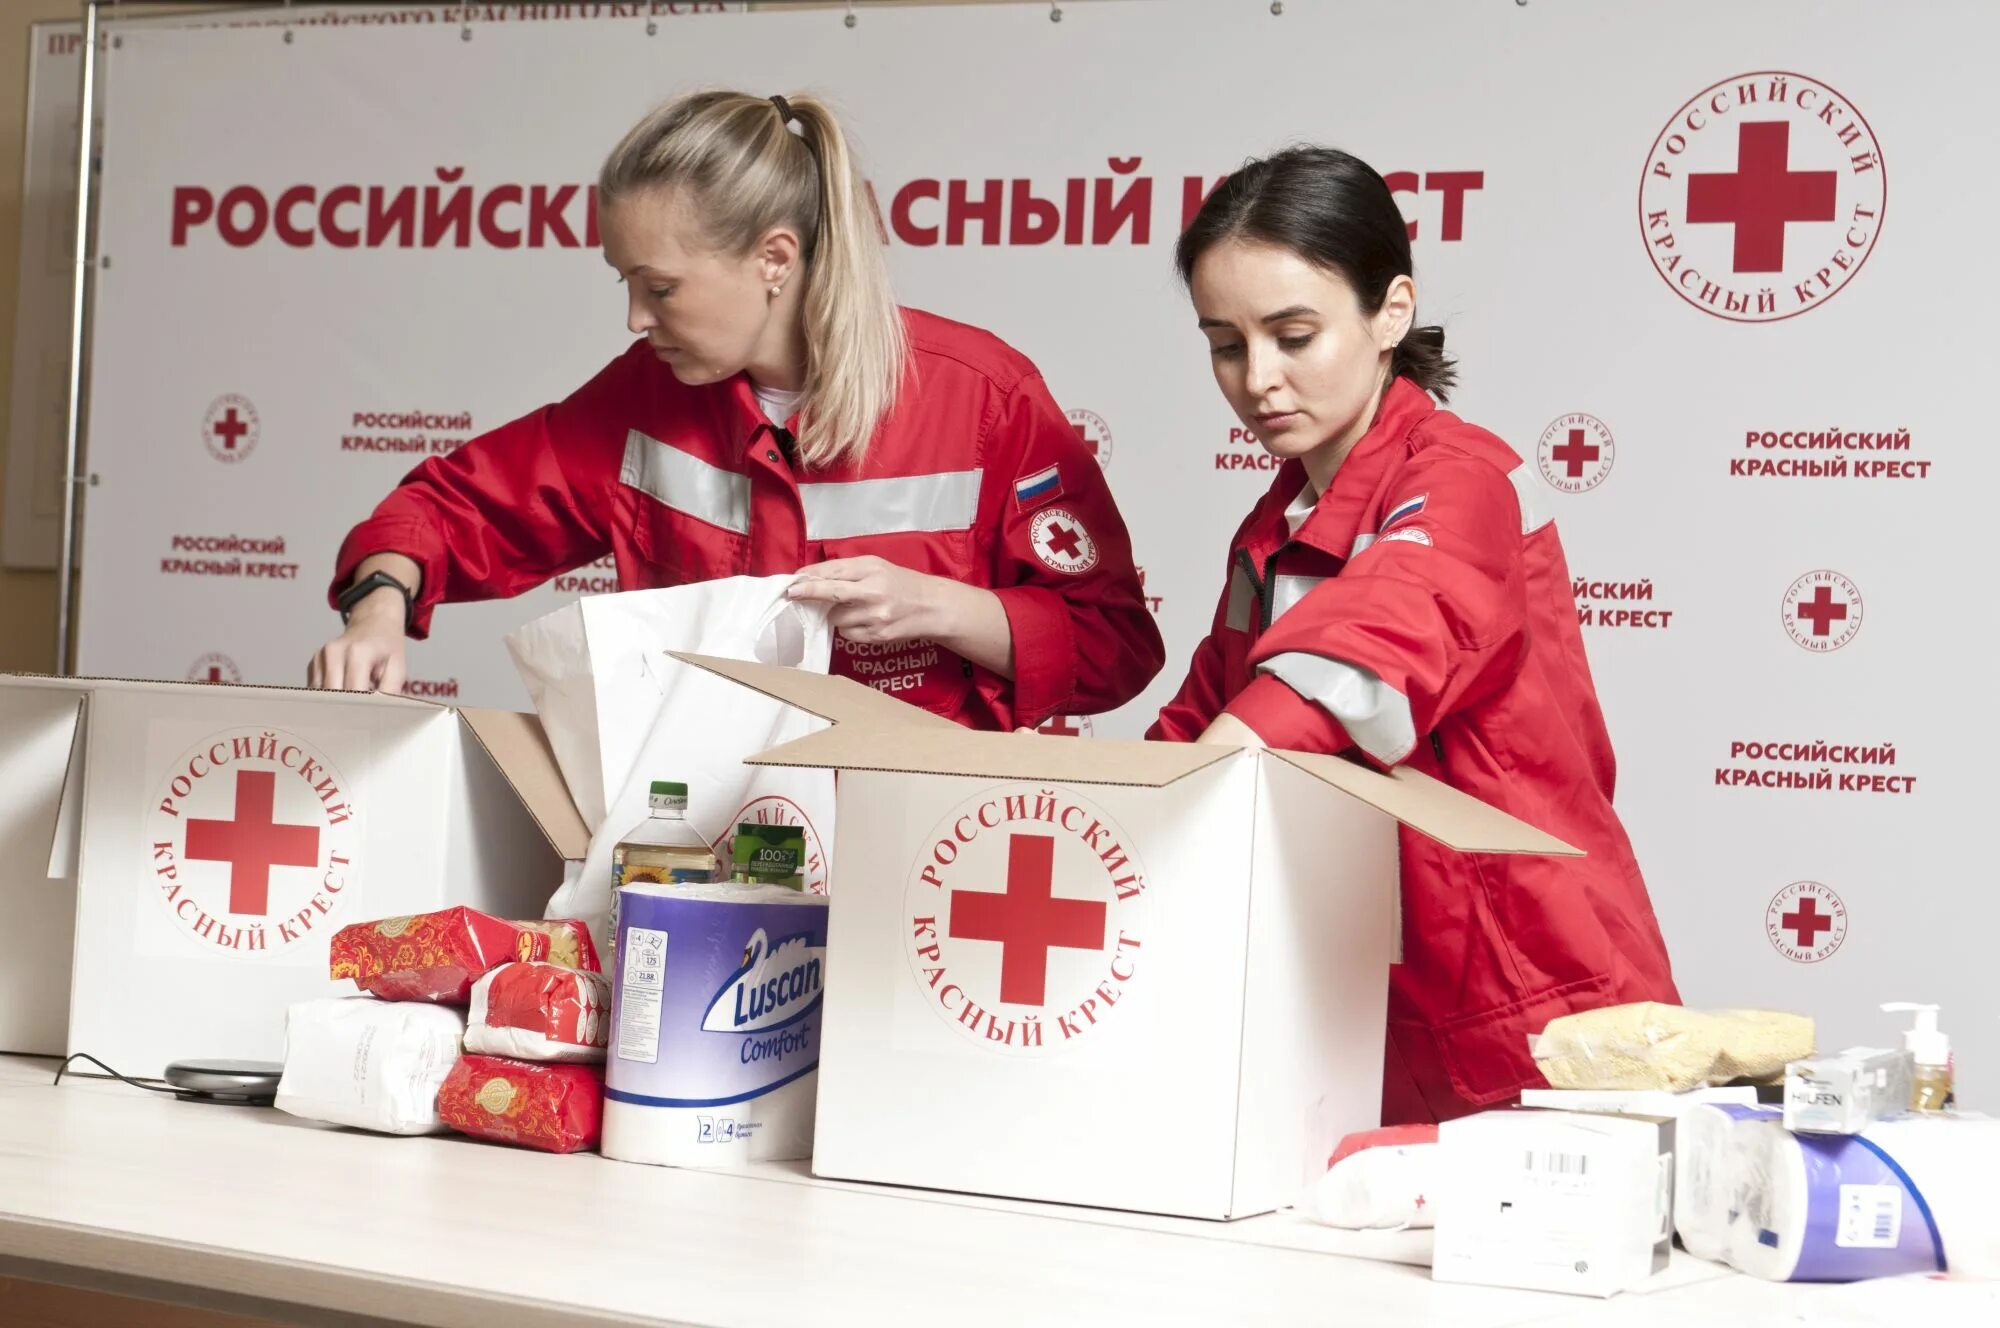 Российский красный крест 155 лет. РКК красный крест. Волонтеры красного Креста. Красный. Работа в красном кресте